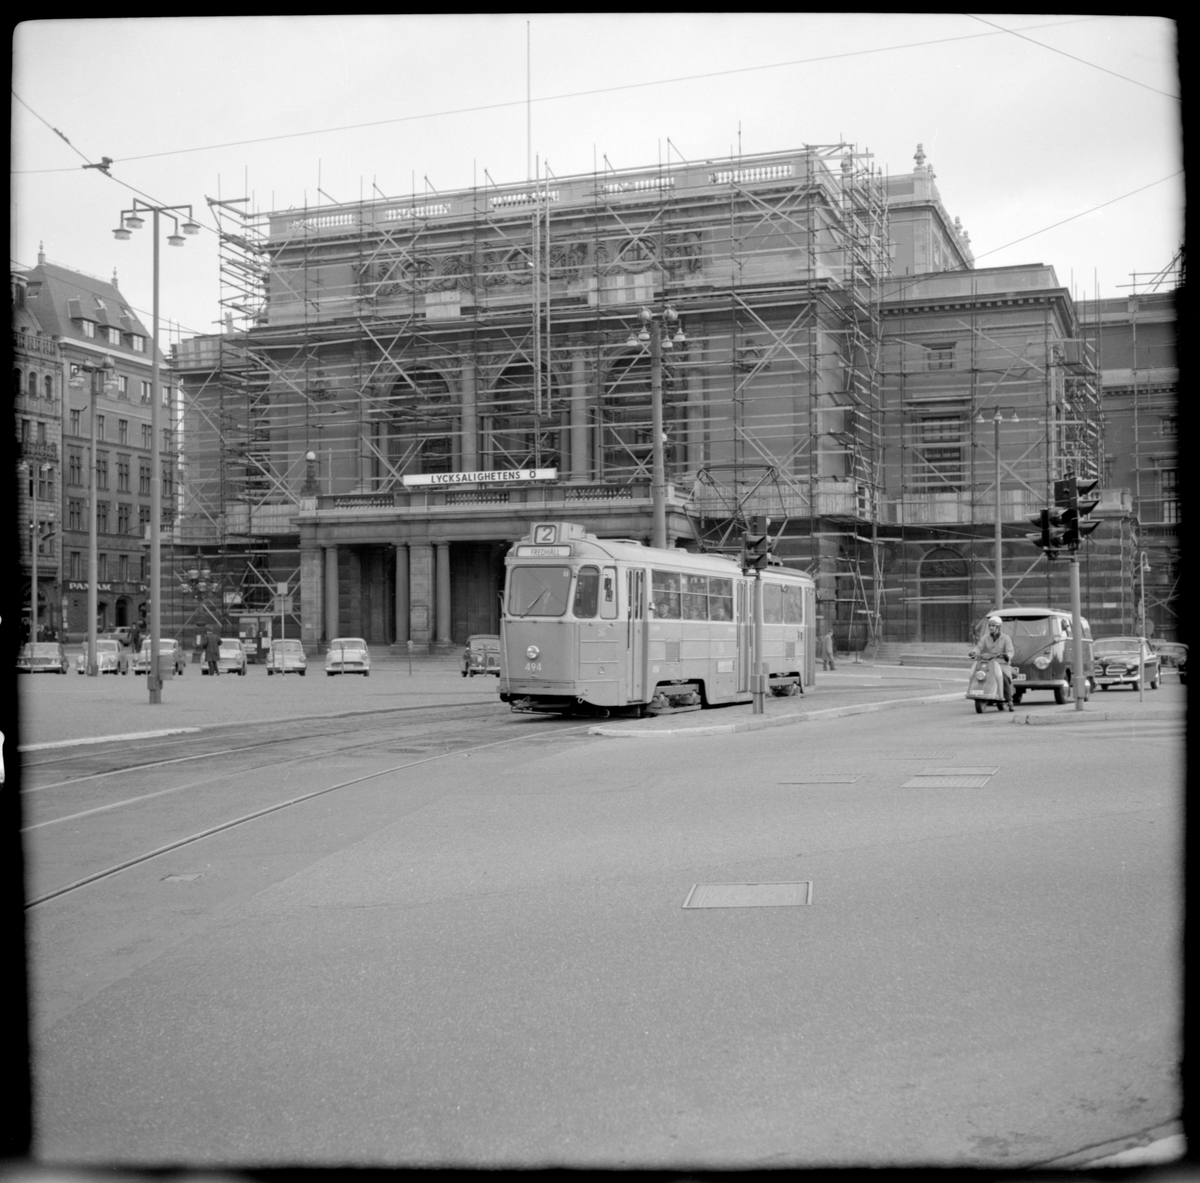 Aktiebolaget Stockholms Spårvägar, SS A26 477 "mustang" linje 2 Fredhäll - Karlaplan vid Gustav Adolfs torg.